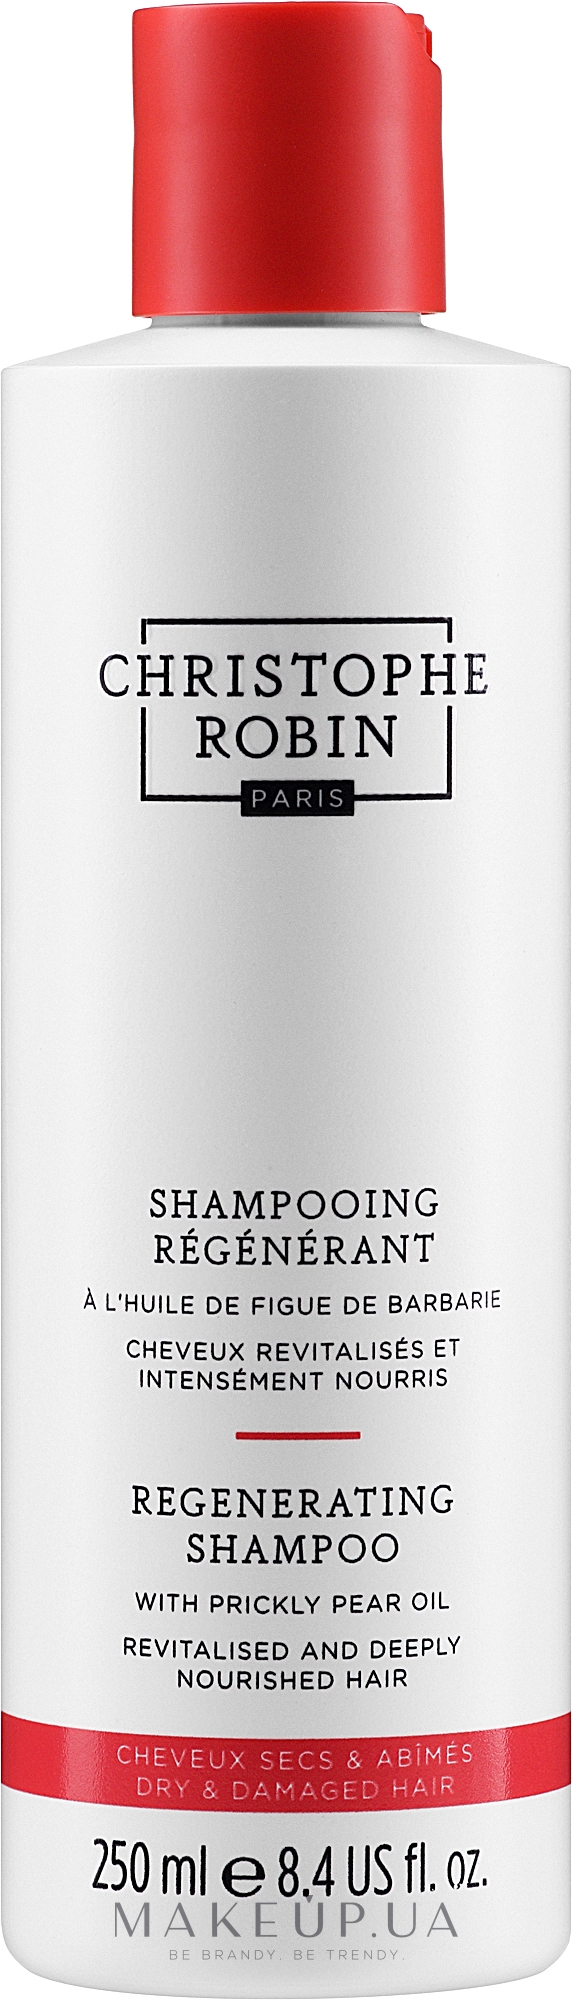 Шампунь з олією опунції для сухого й пошкодженого волосся - Christophe Robin Regenerating Shampoo with Prickly Pear Oil — фото 250ml